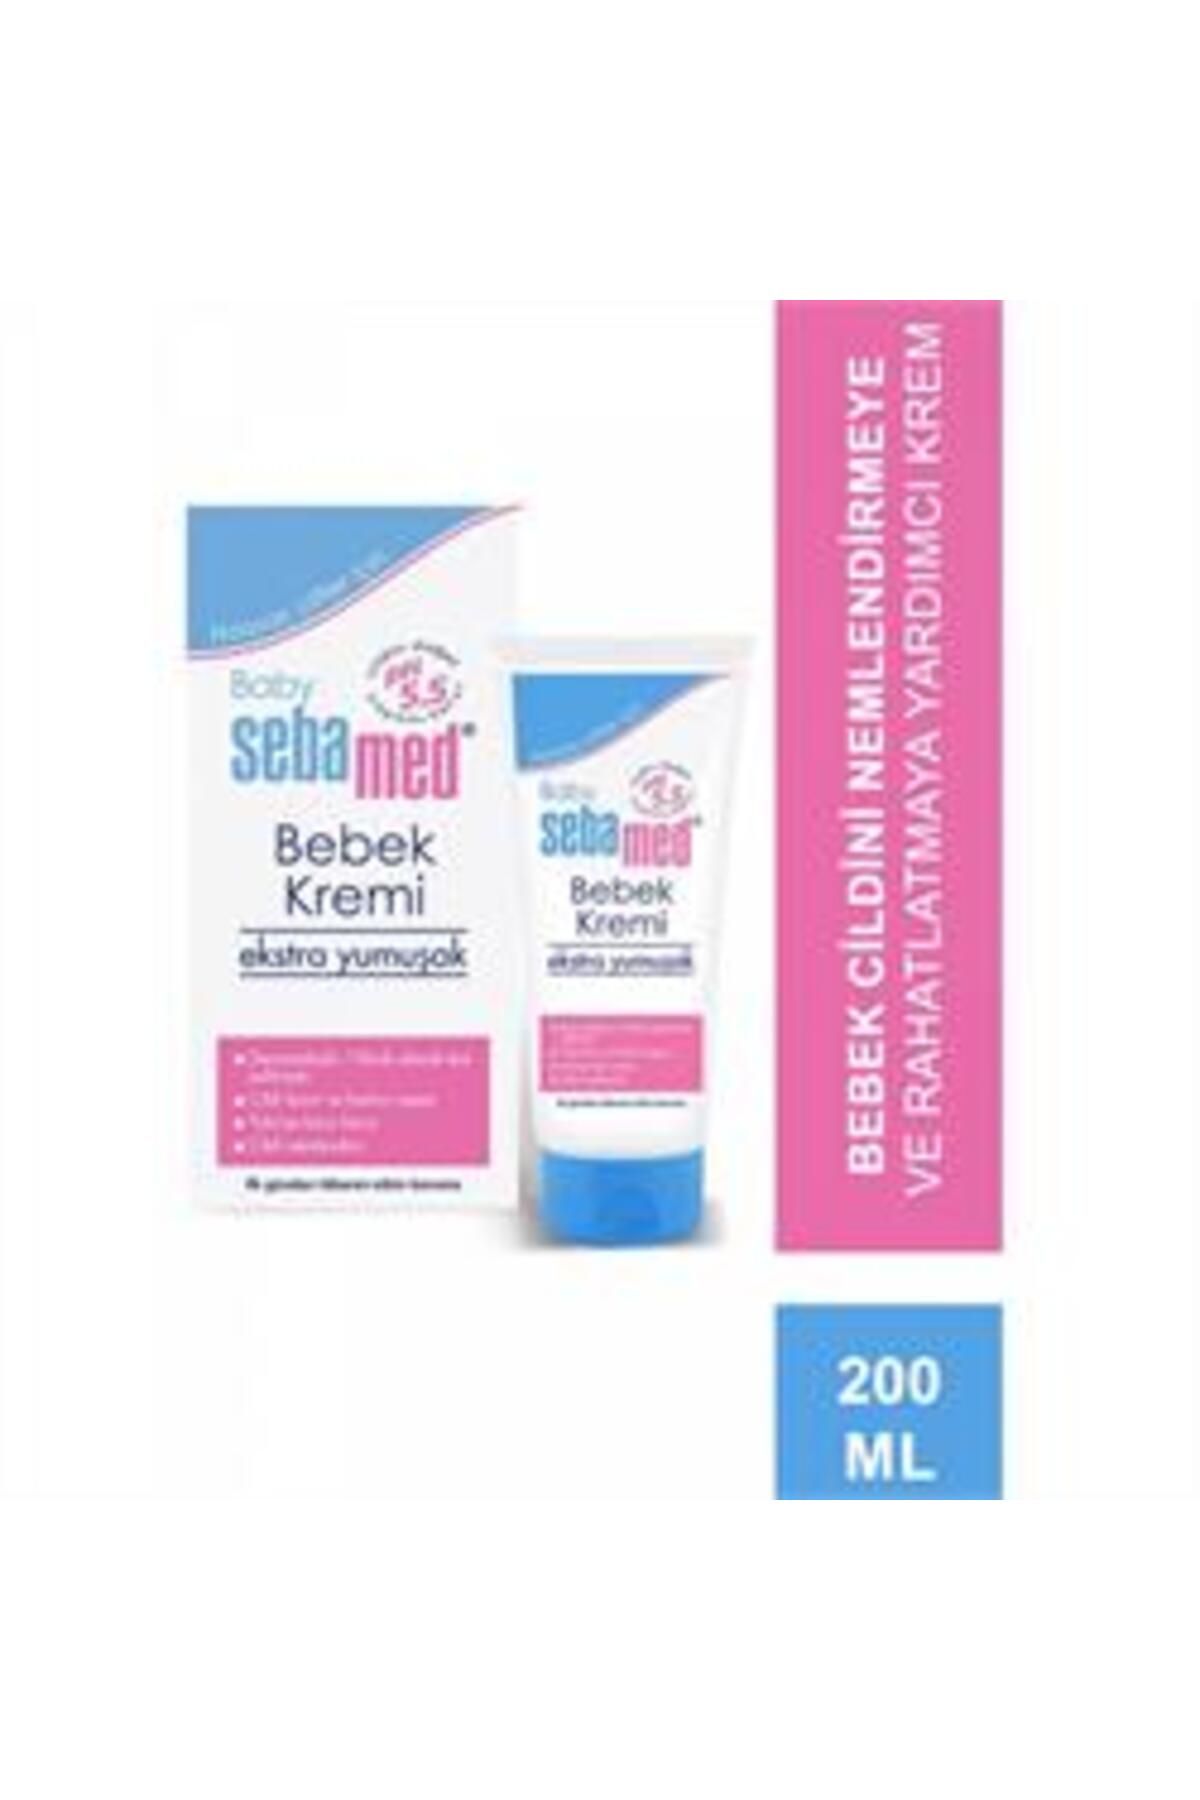 Sebamed Baby Cream Extra Soft Pişik Kremi 200 ml ( 1 ADET )